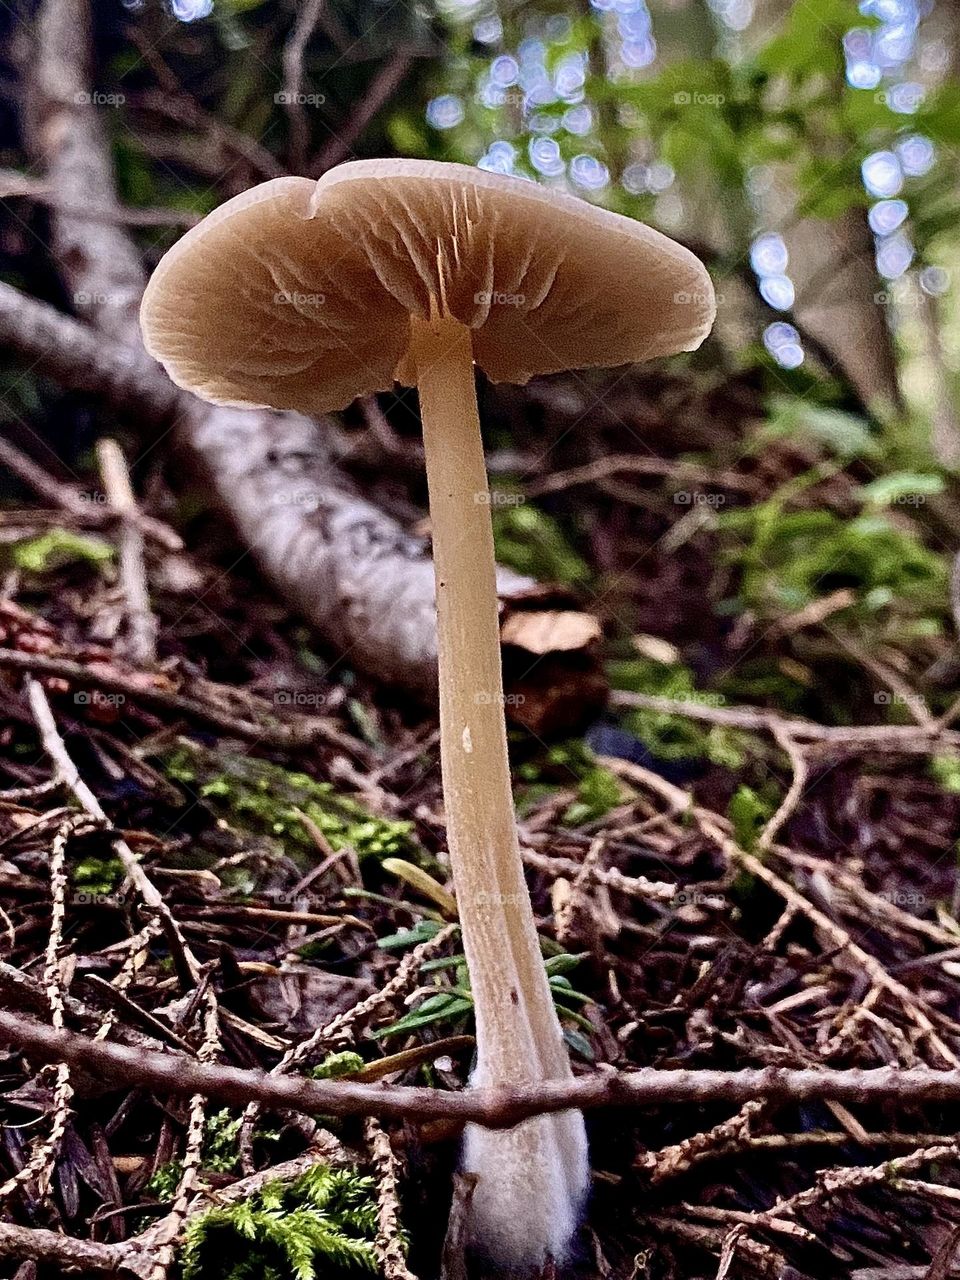 Underneath a mushroom 